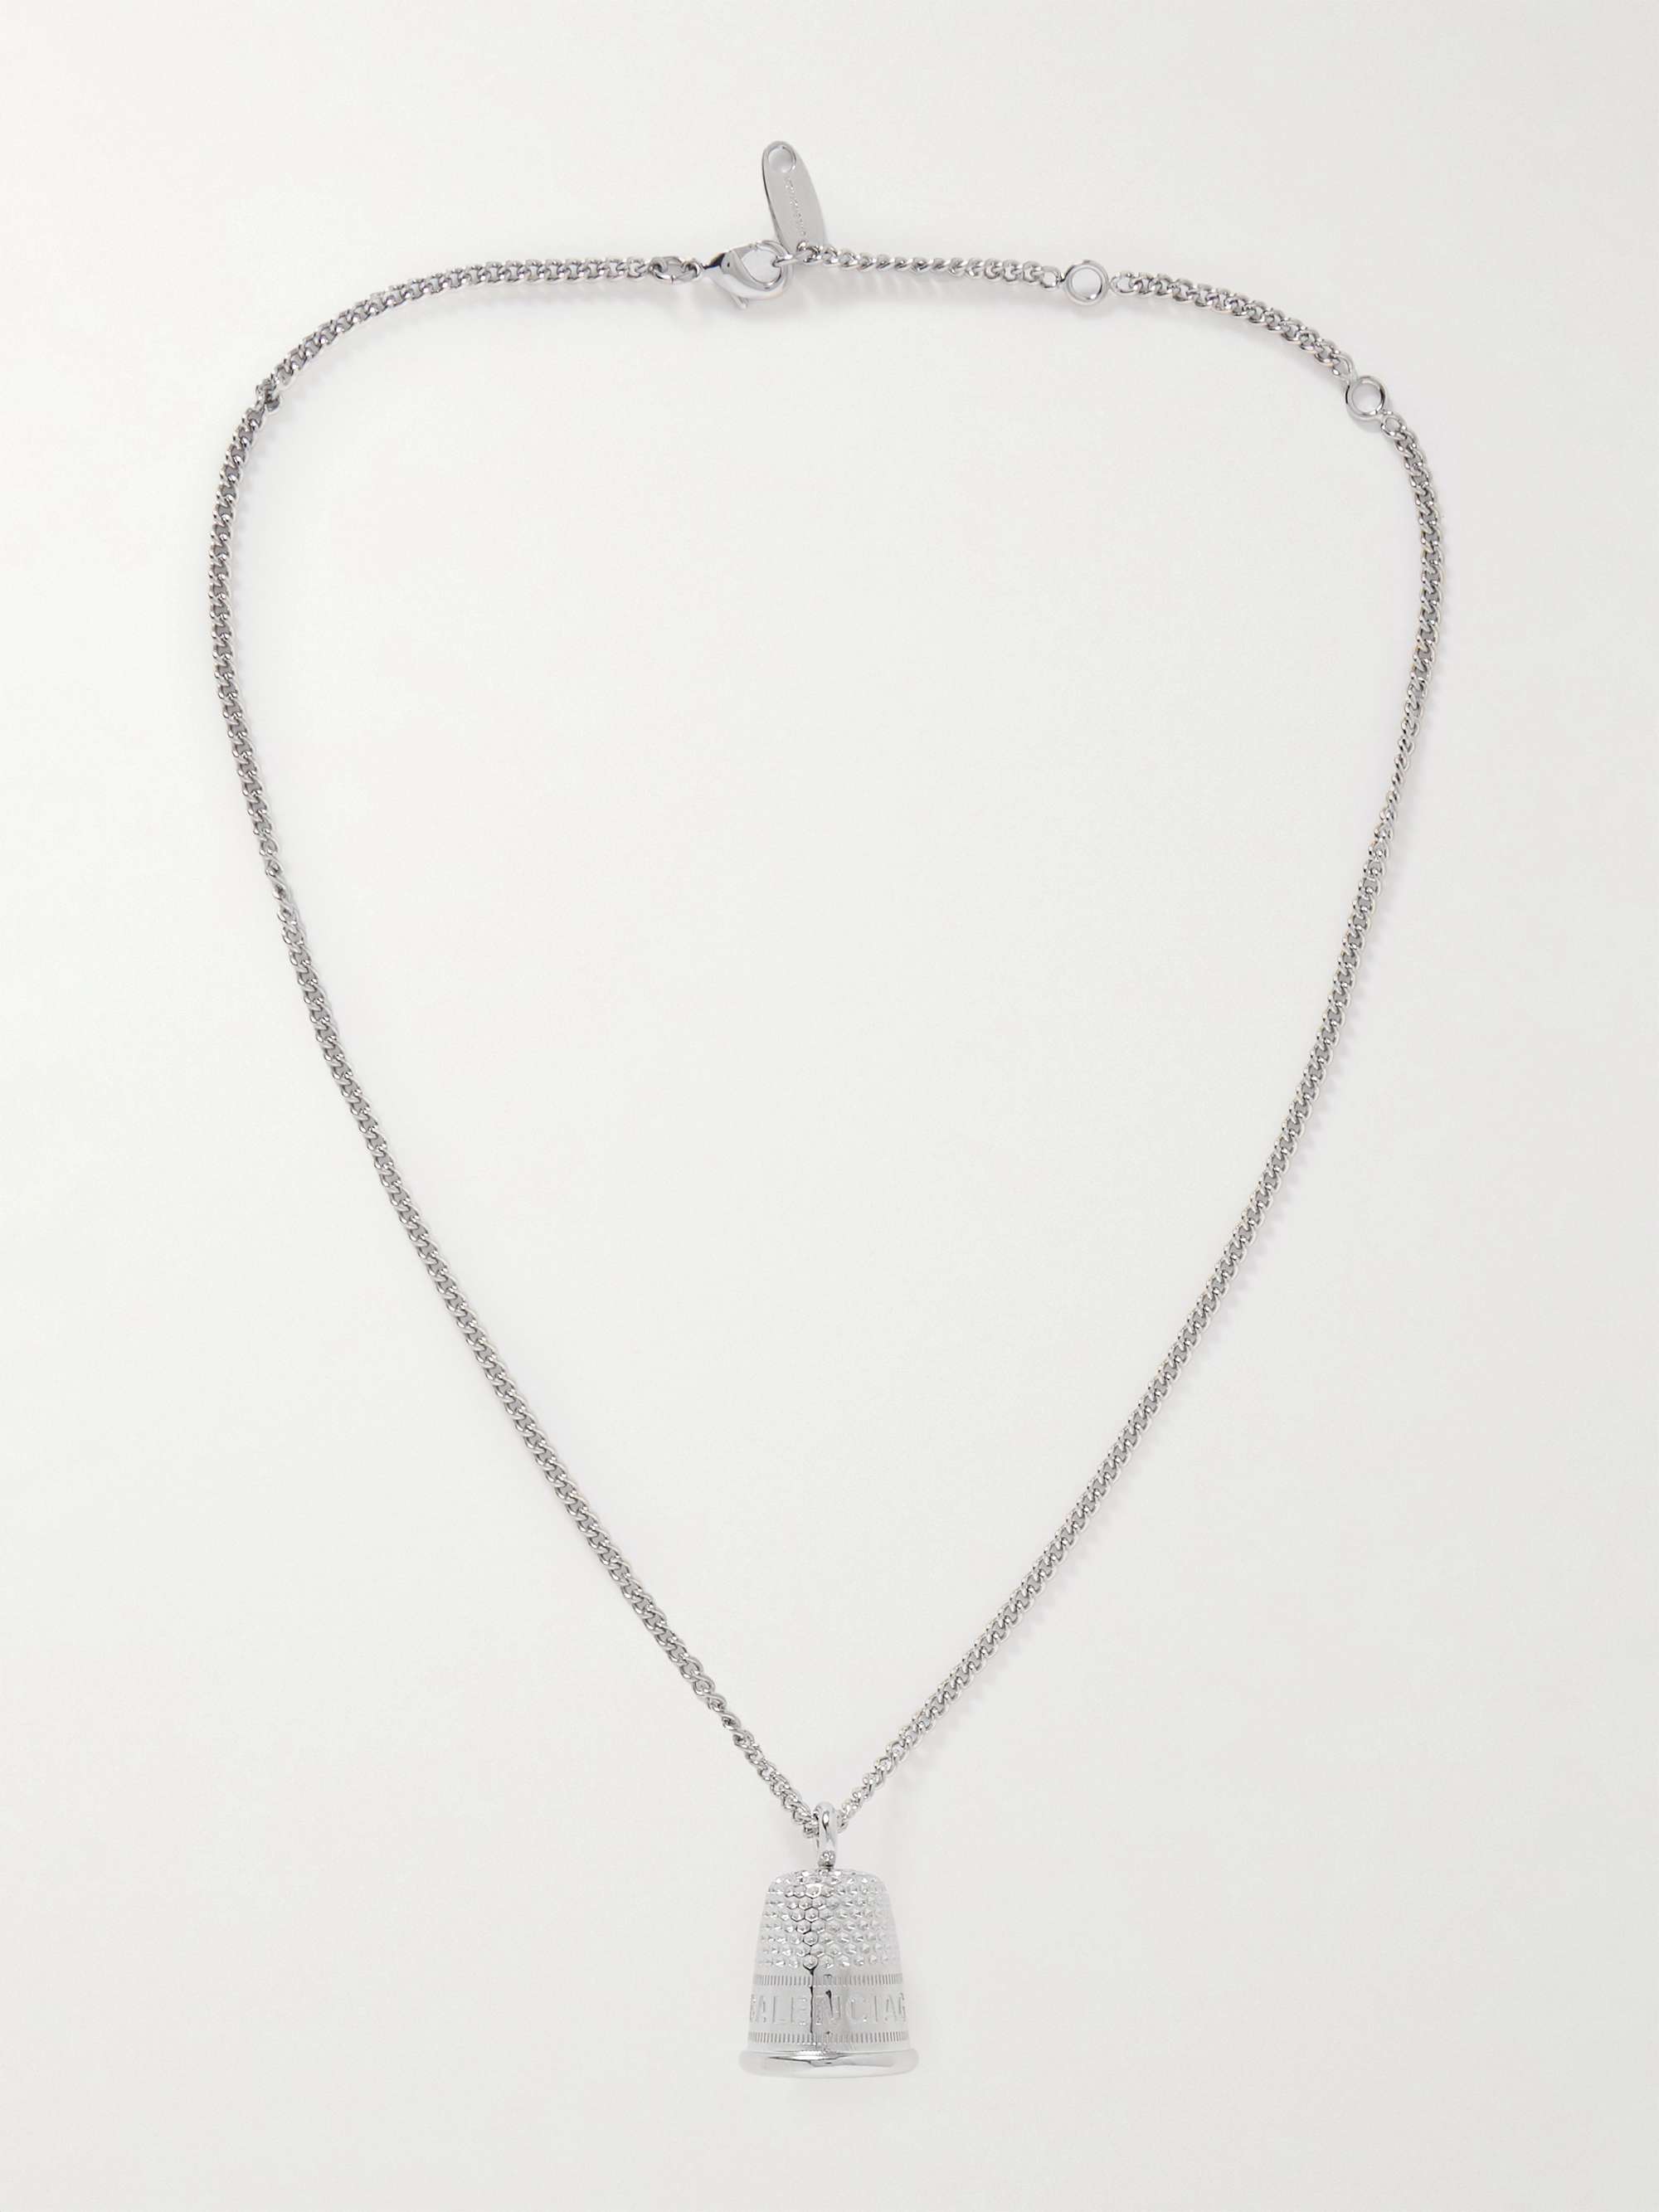 BALENCIAGA Shiny Silver-Tone Necklace